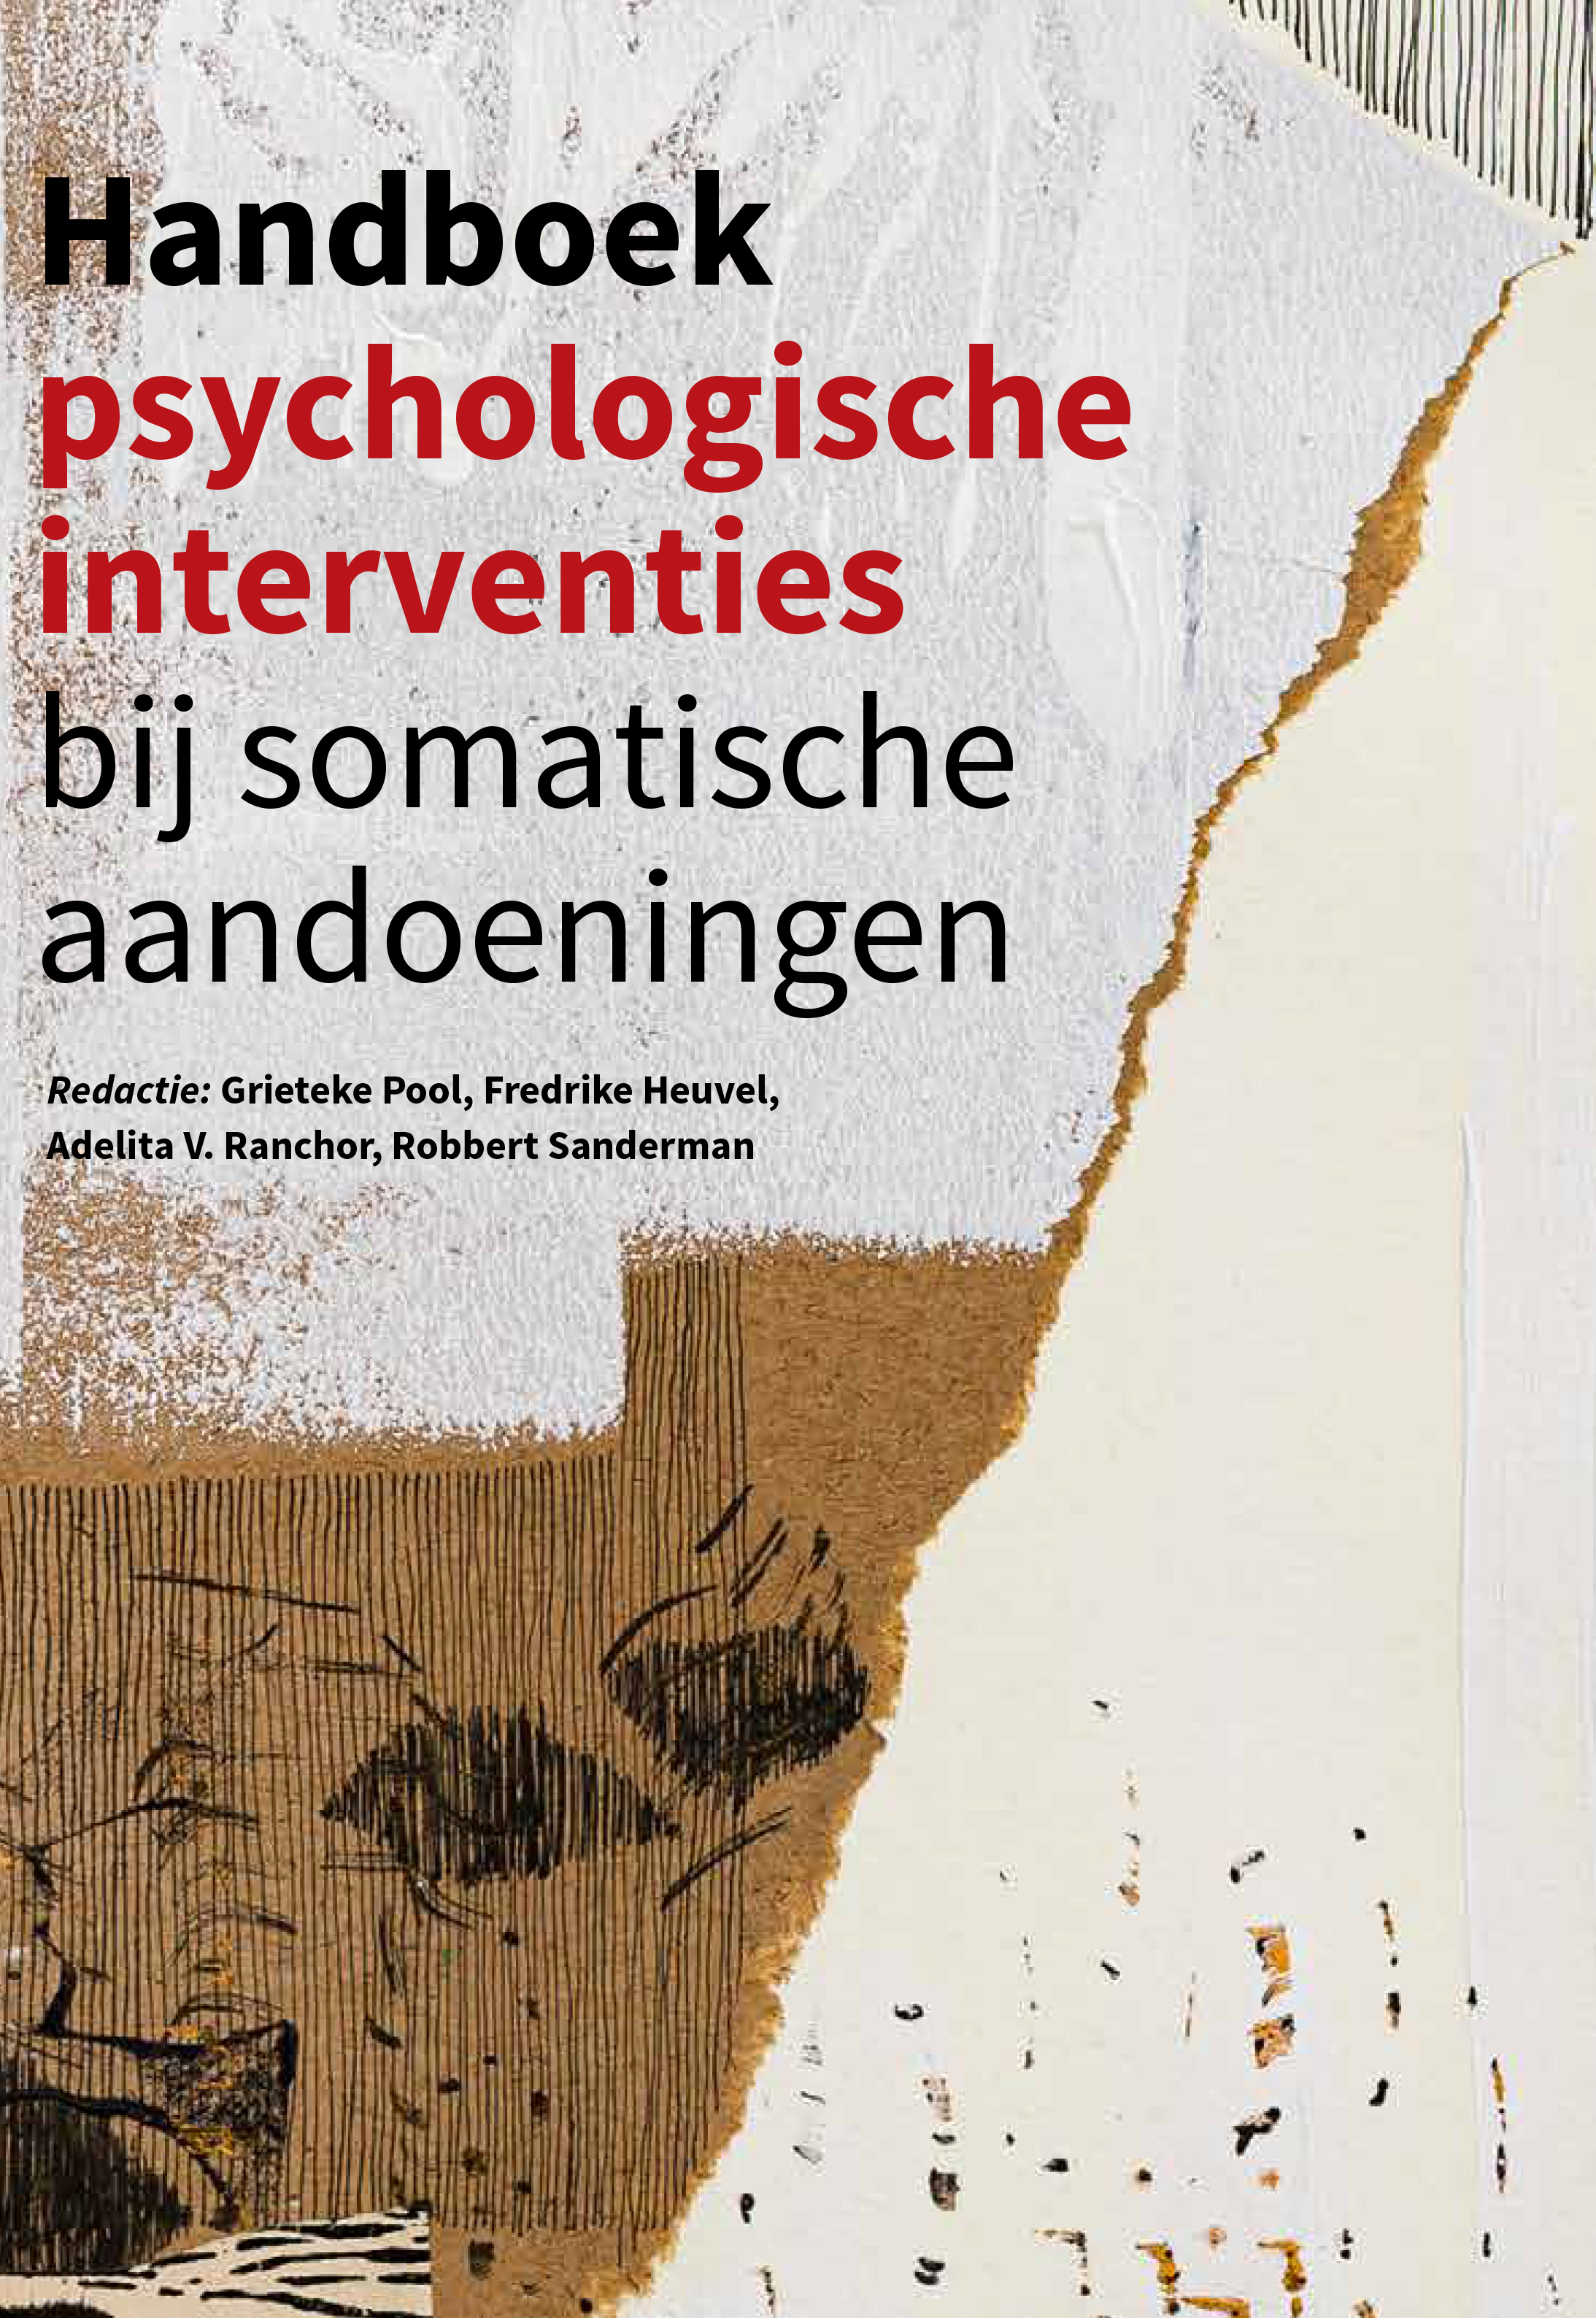 Handboek psychologische interventies